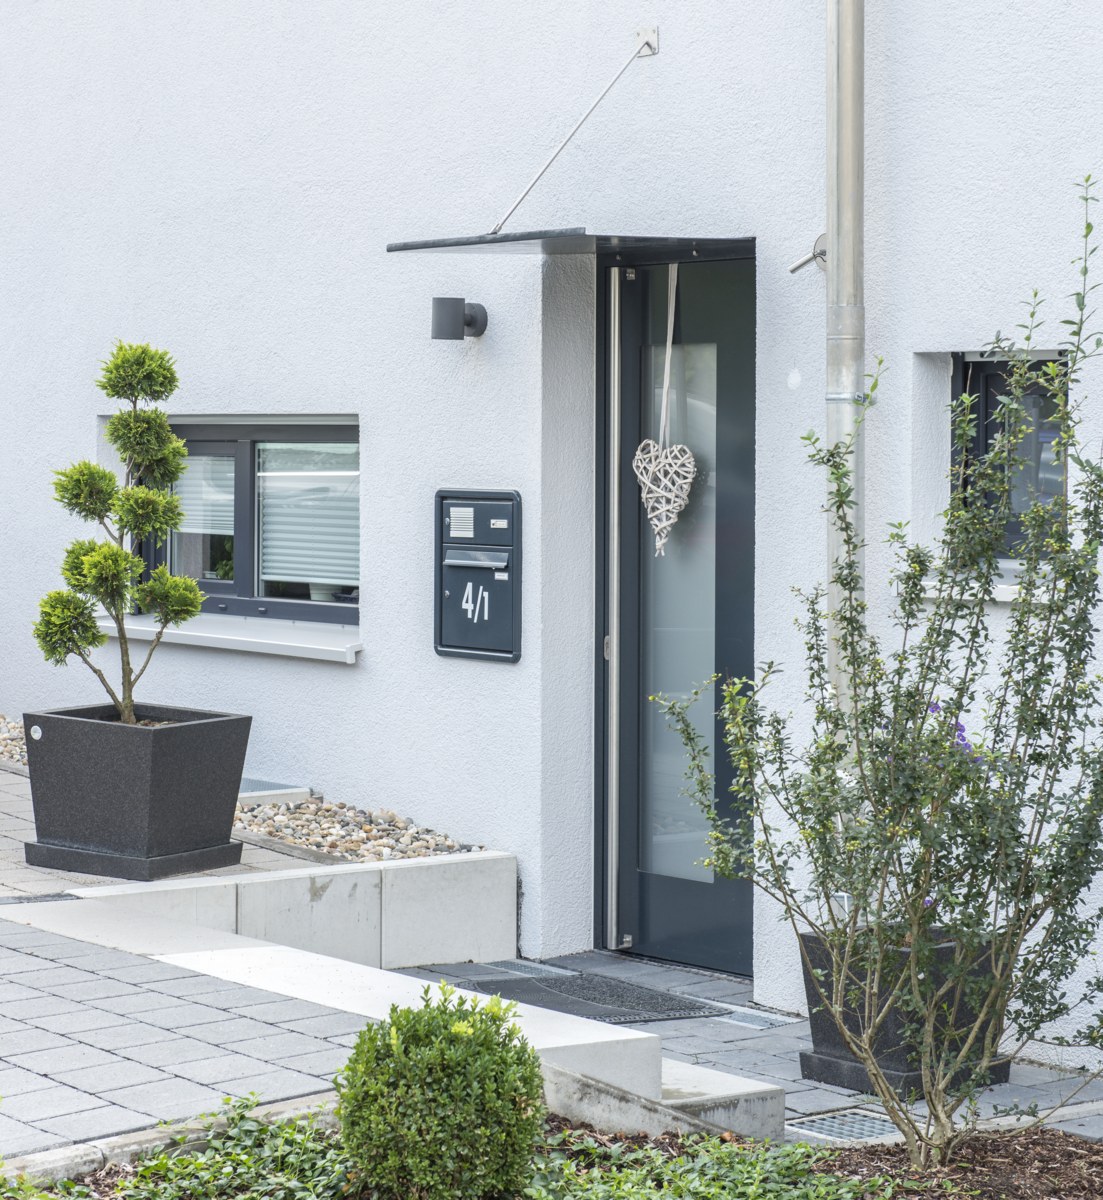 Wir stehen Ihnen im Raum Meiningen und Umgebung bei Fragen rund um Ihre neue Haustür zur Verfügung.